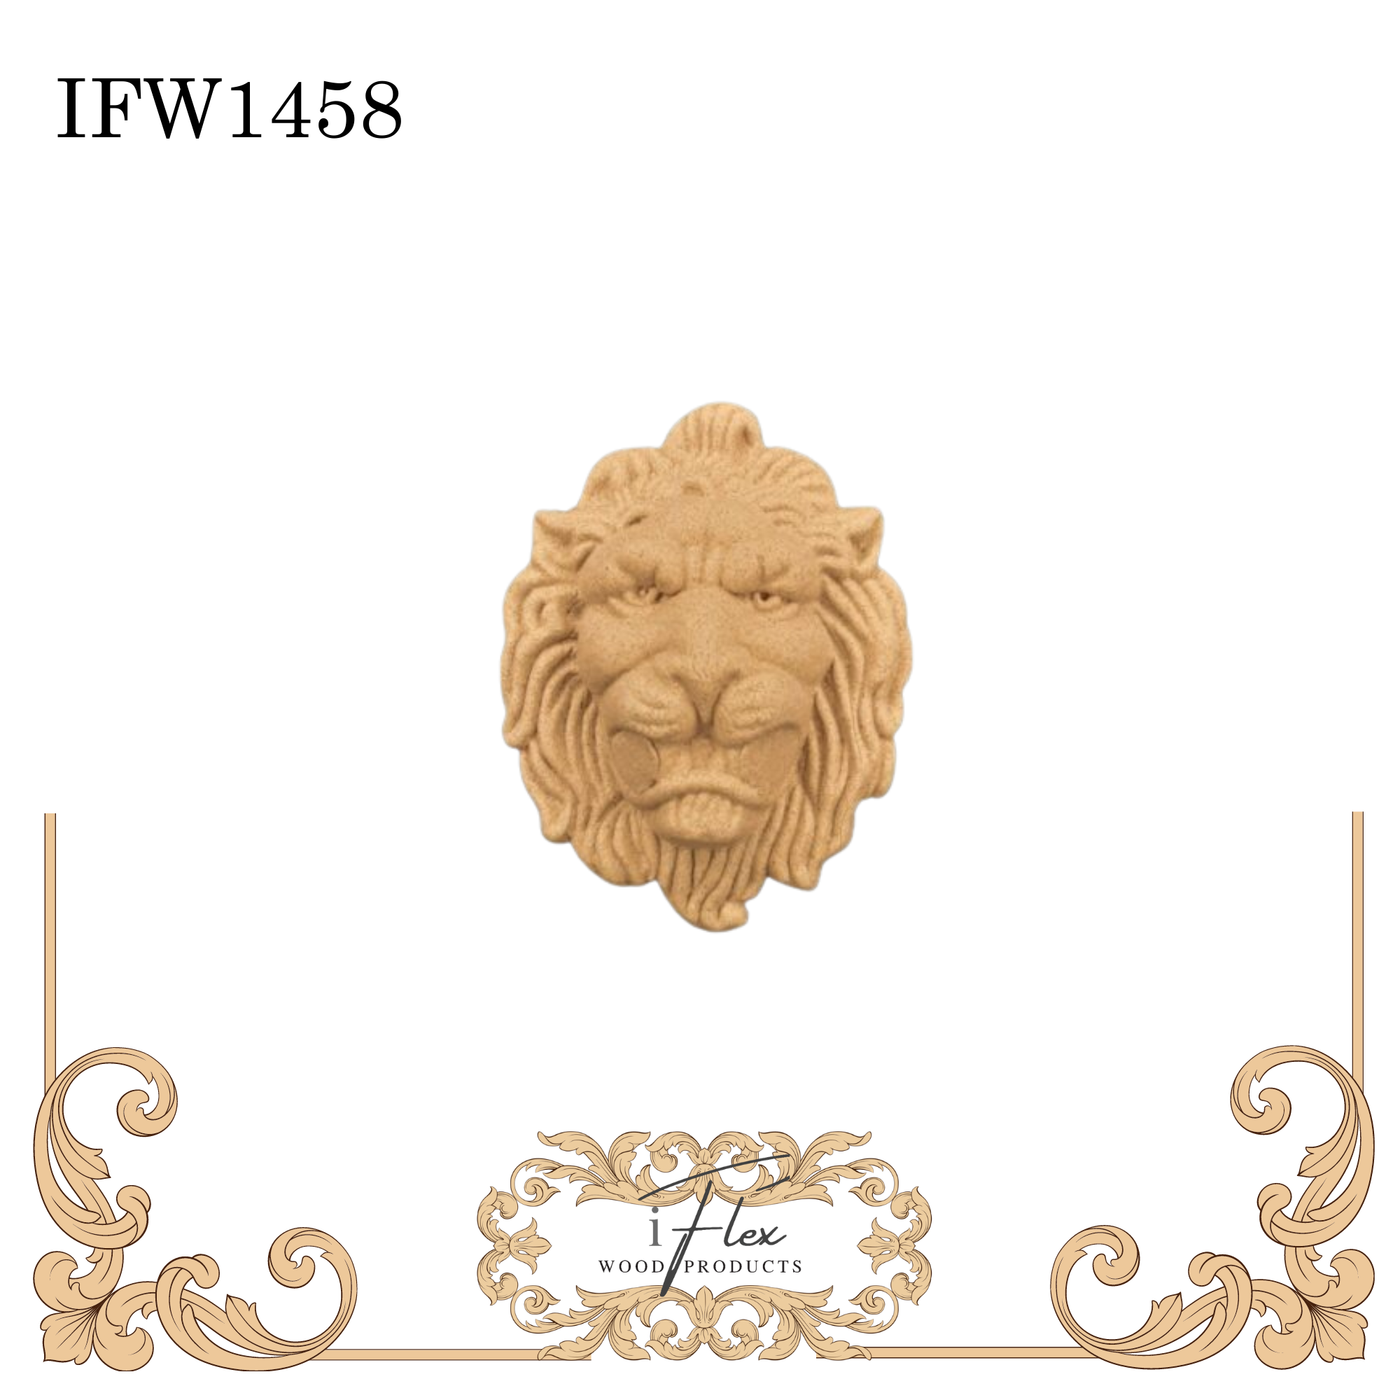 IFW 1458